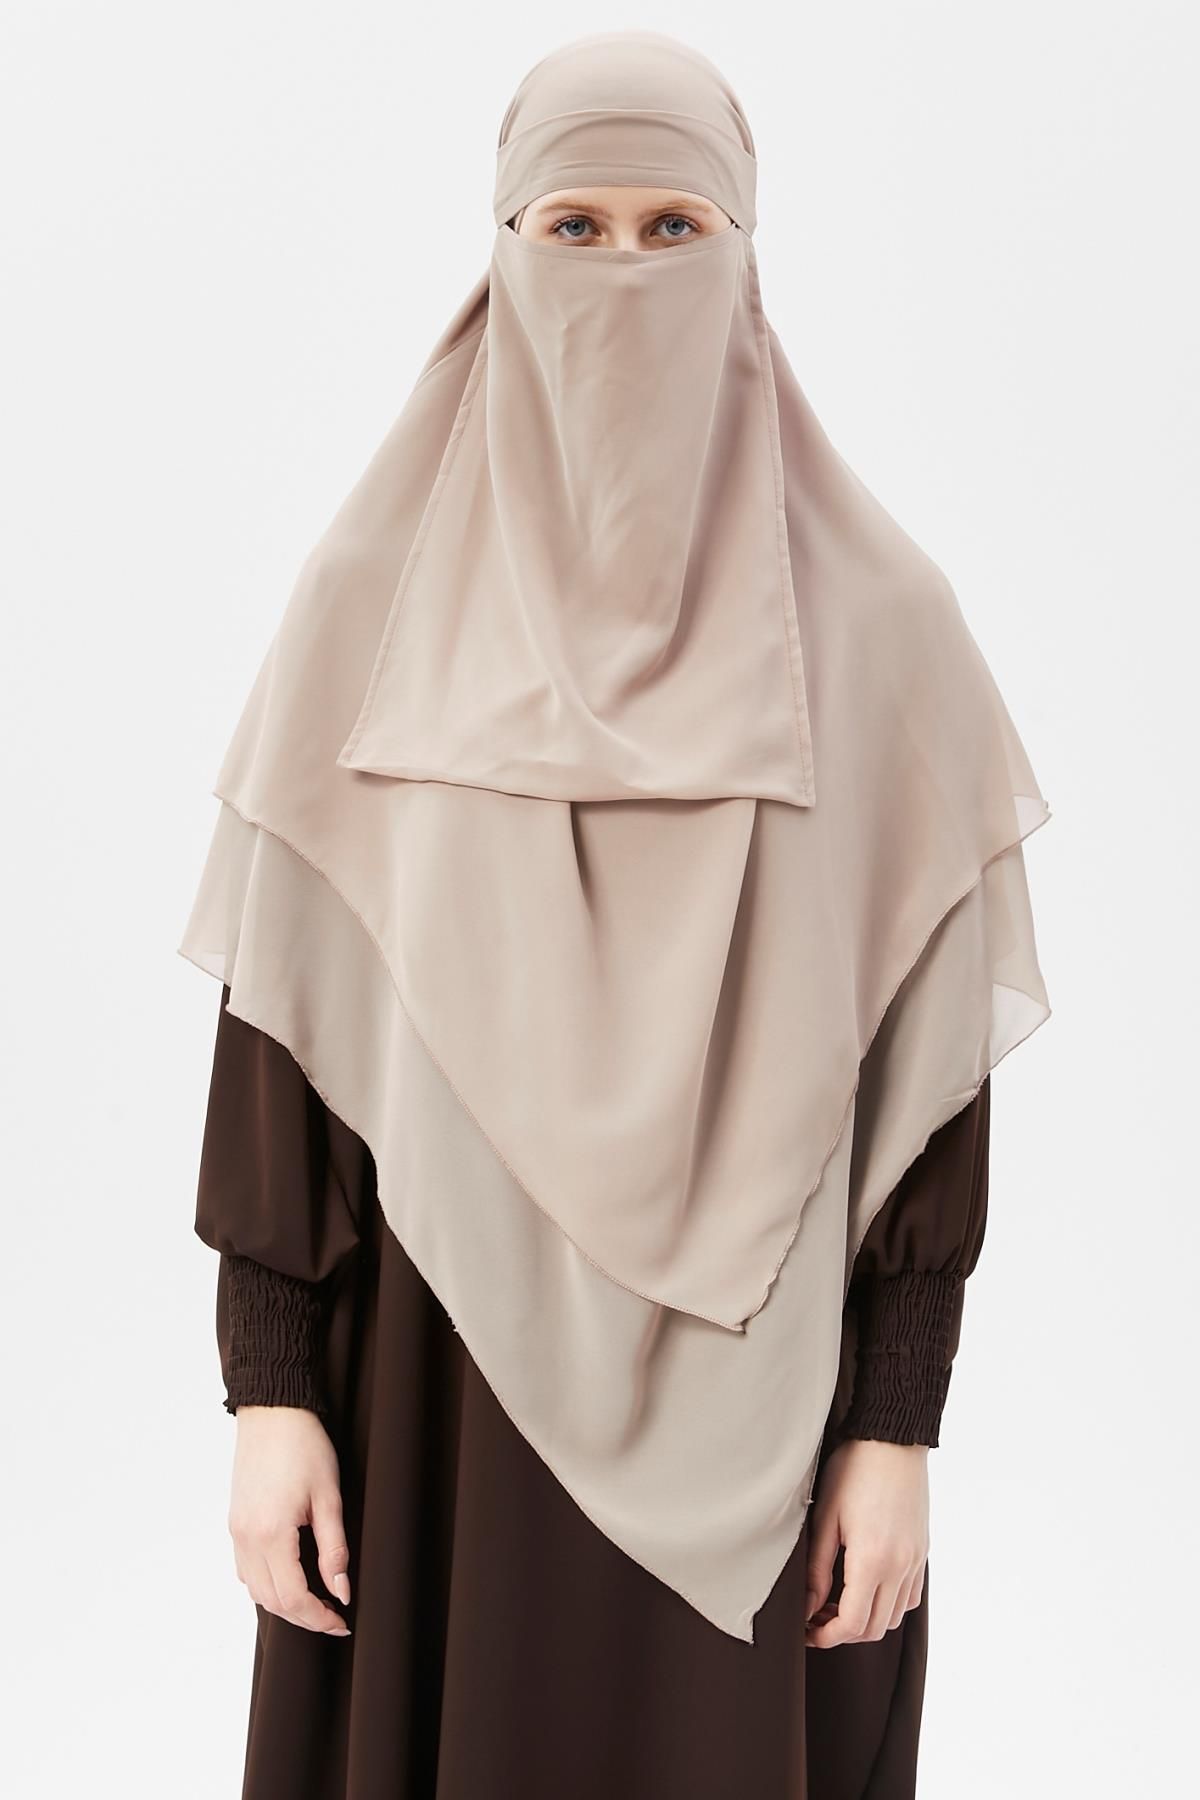 Altobeh Hazır Pratik Şifon Üç Katlı Peçeli Üçgen Hac Umre Şalı Sufle Hijab Nikap Kum Beji